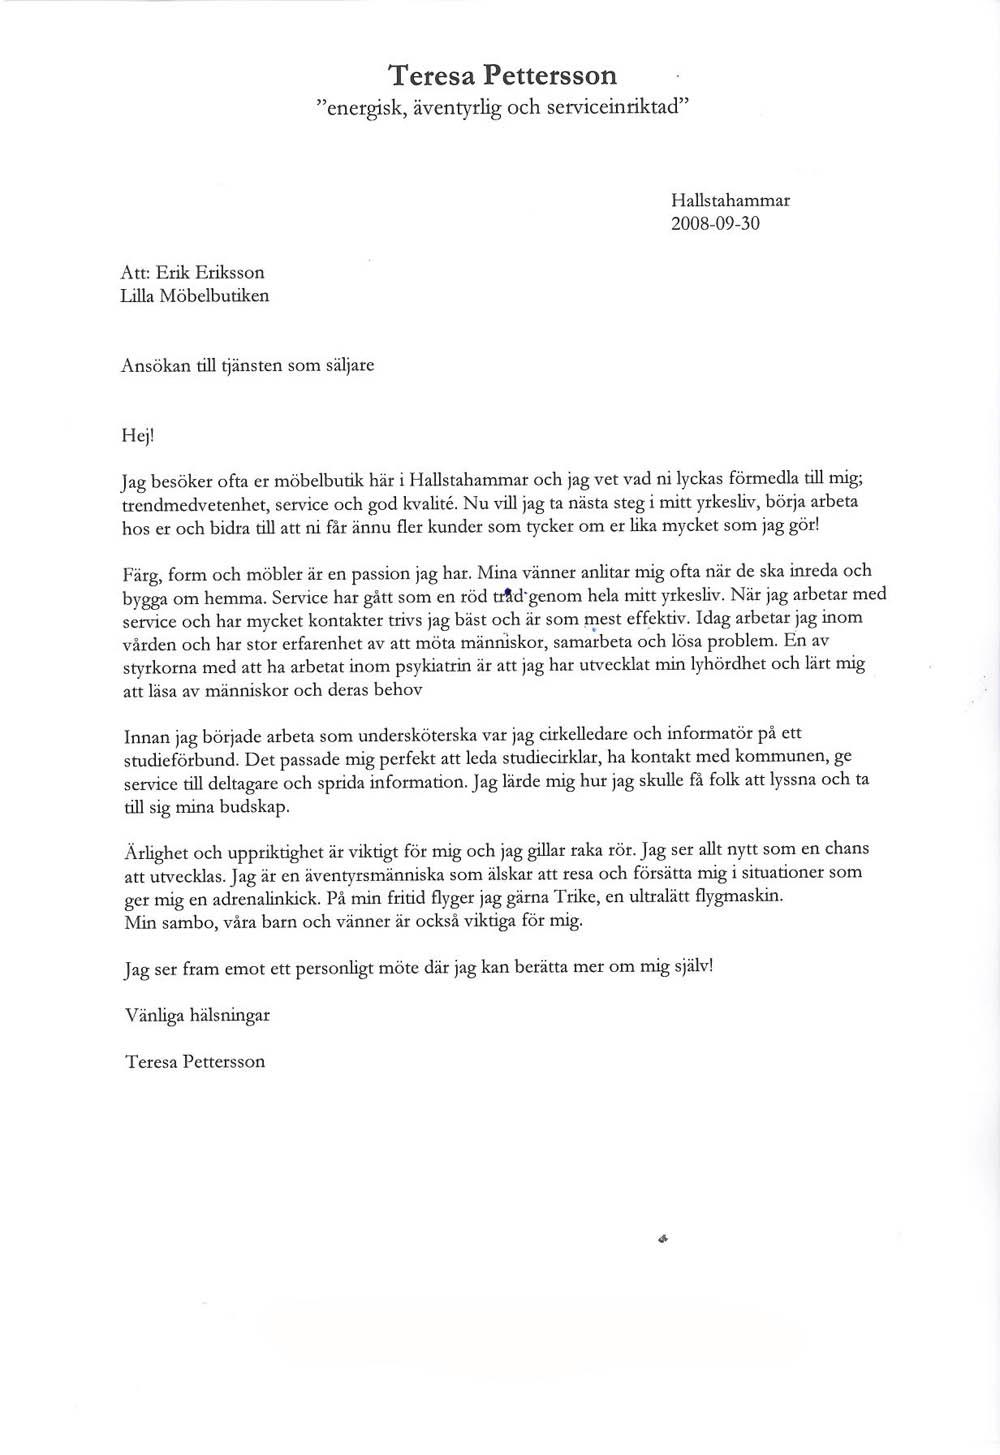 EFTER. Teresas personliga brev, skrivet av CV-experterna. (Klicka på bilden)